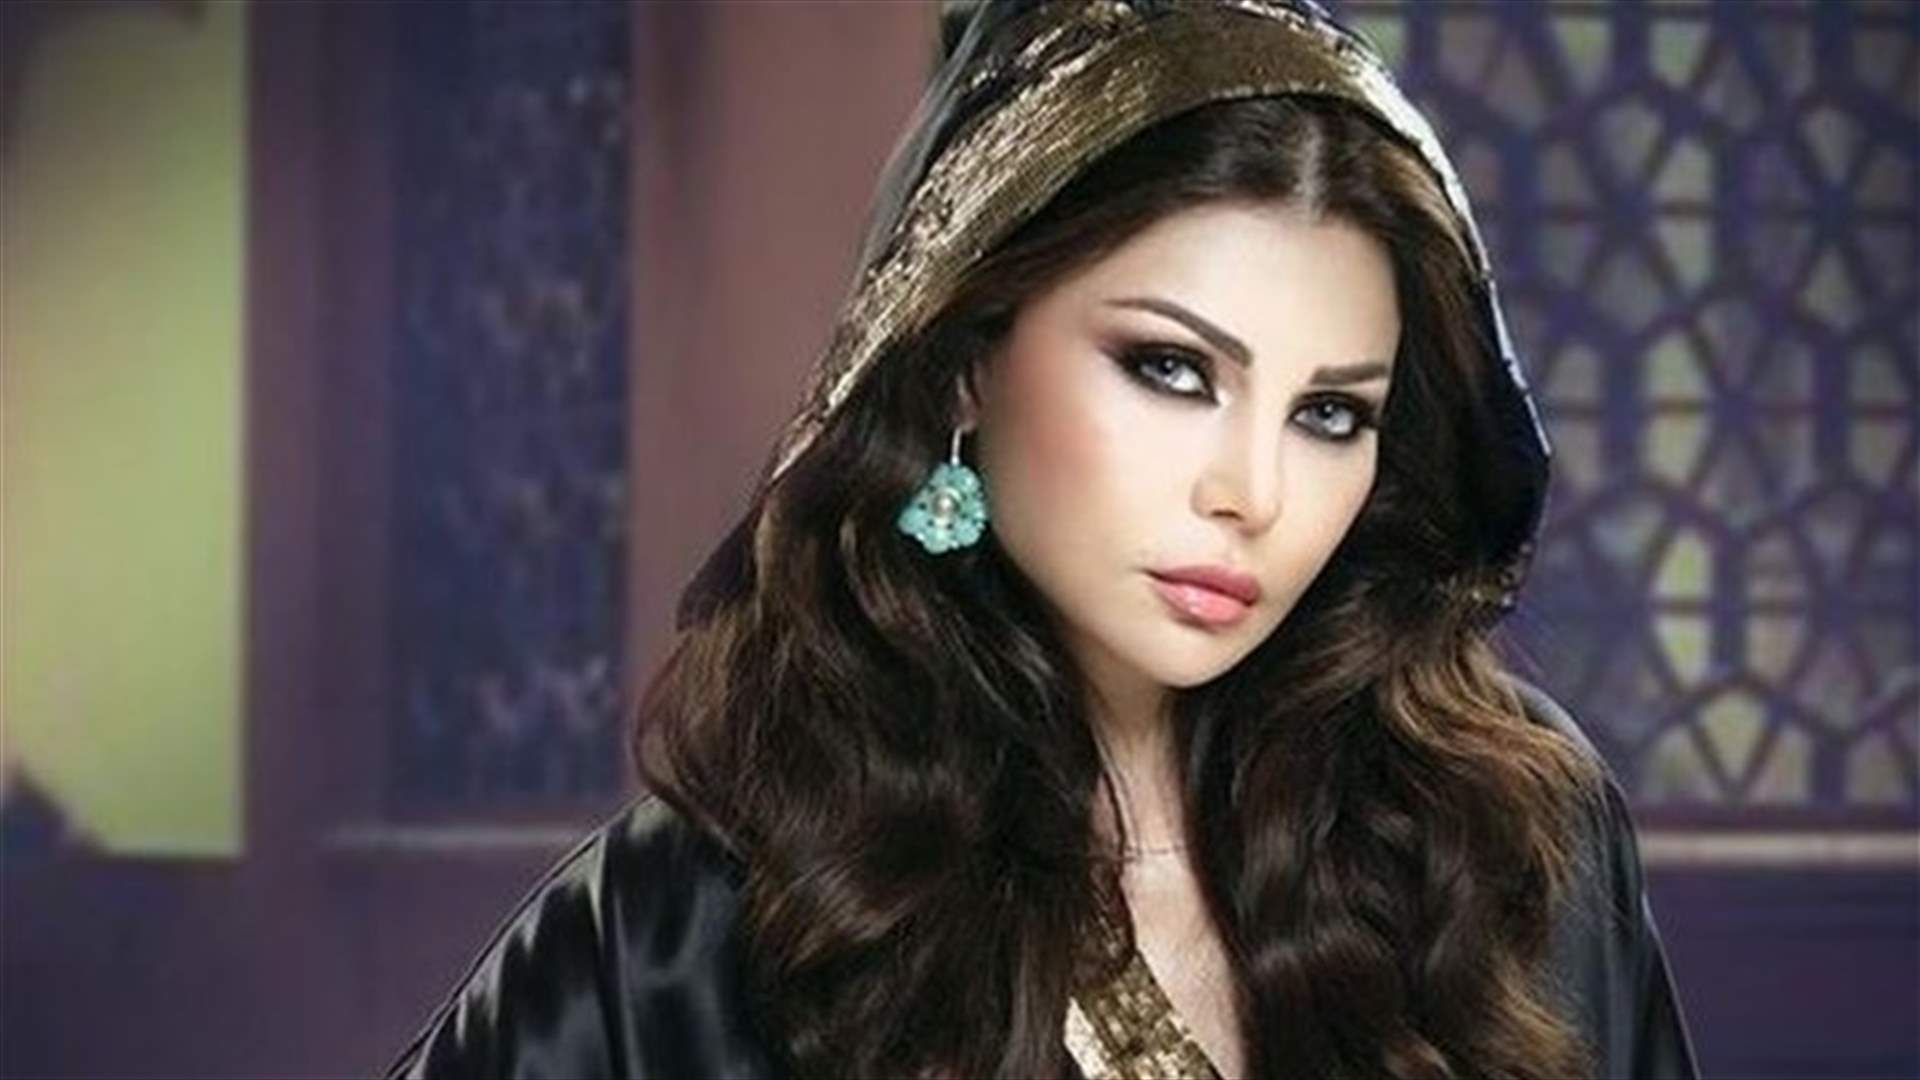 المرأة اللبنانية من بين الأكثر جاذبية حول العالم